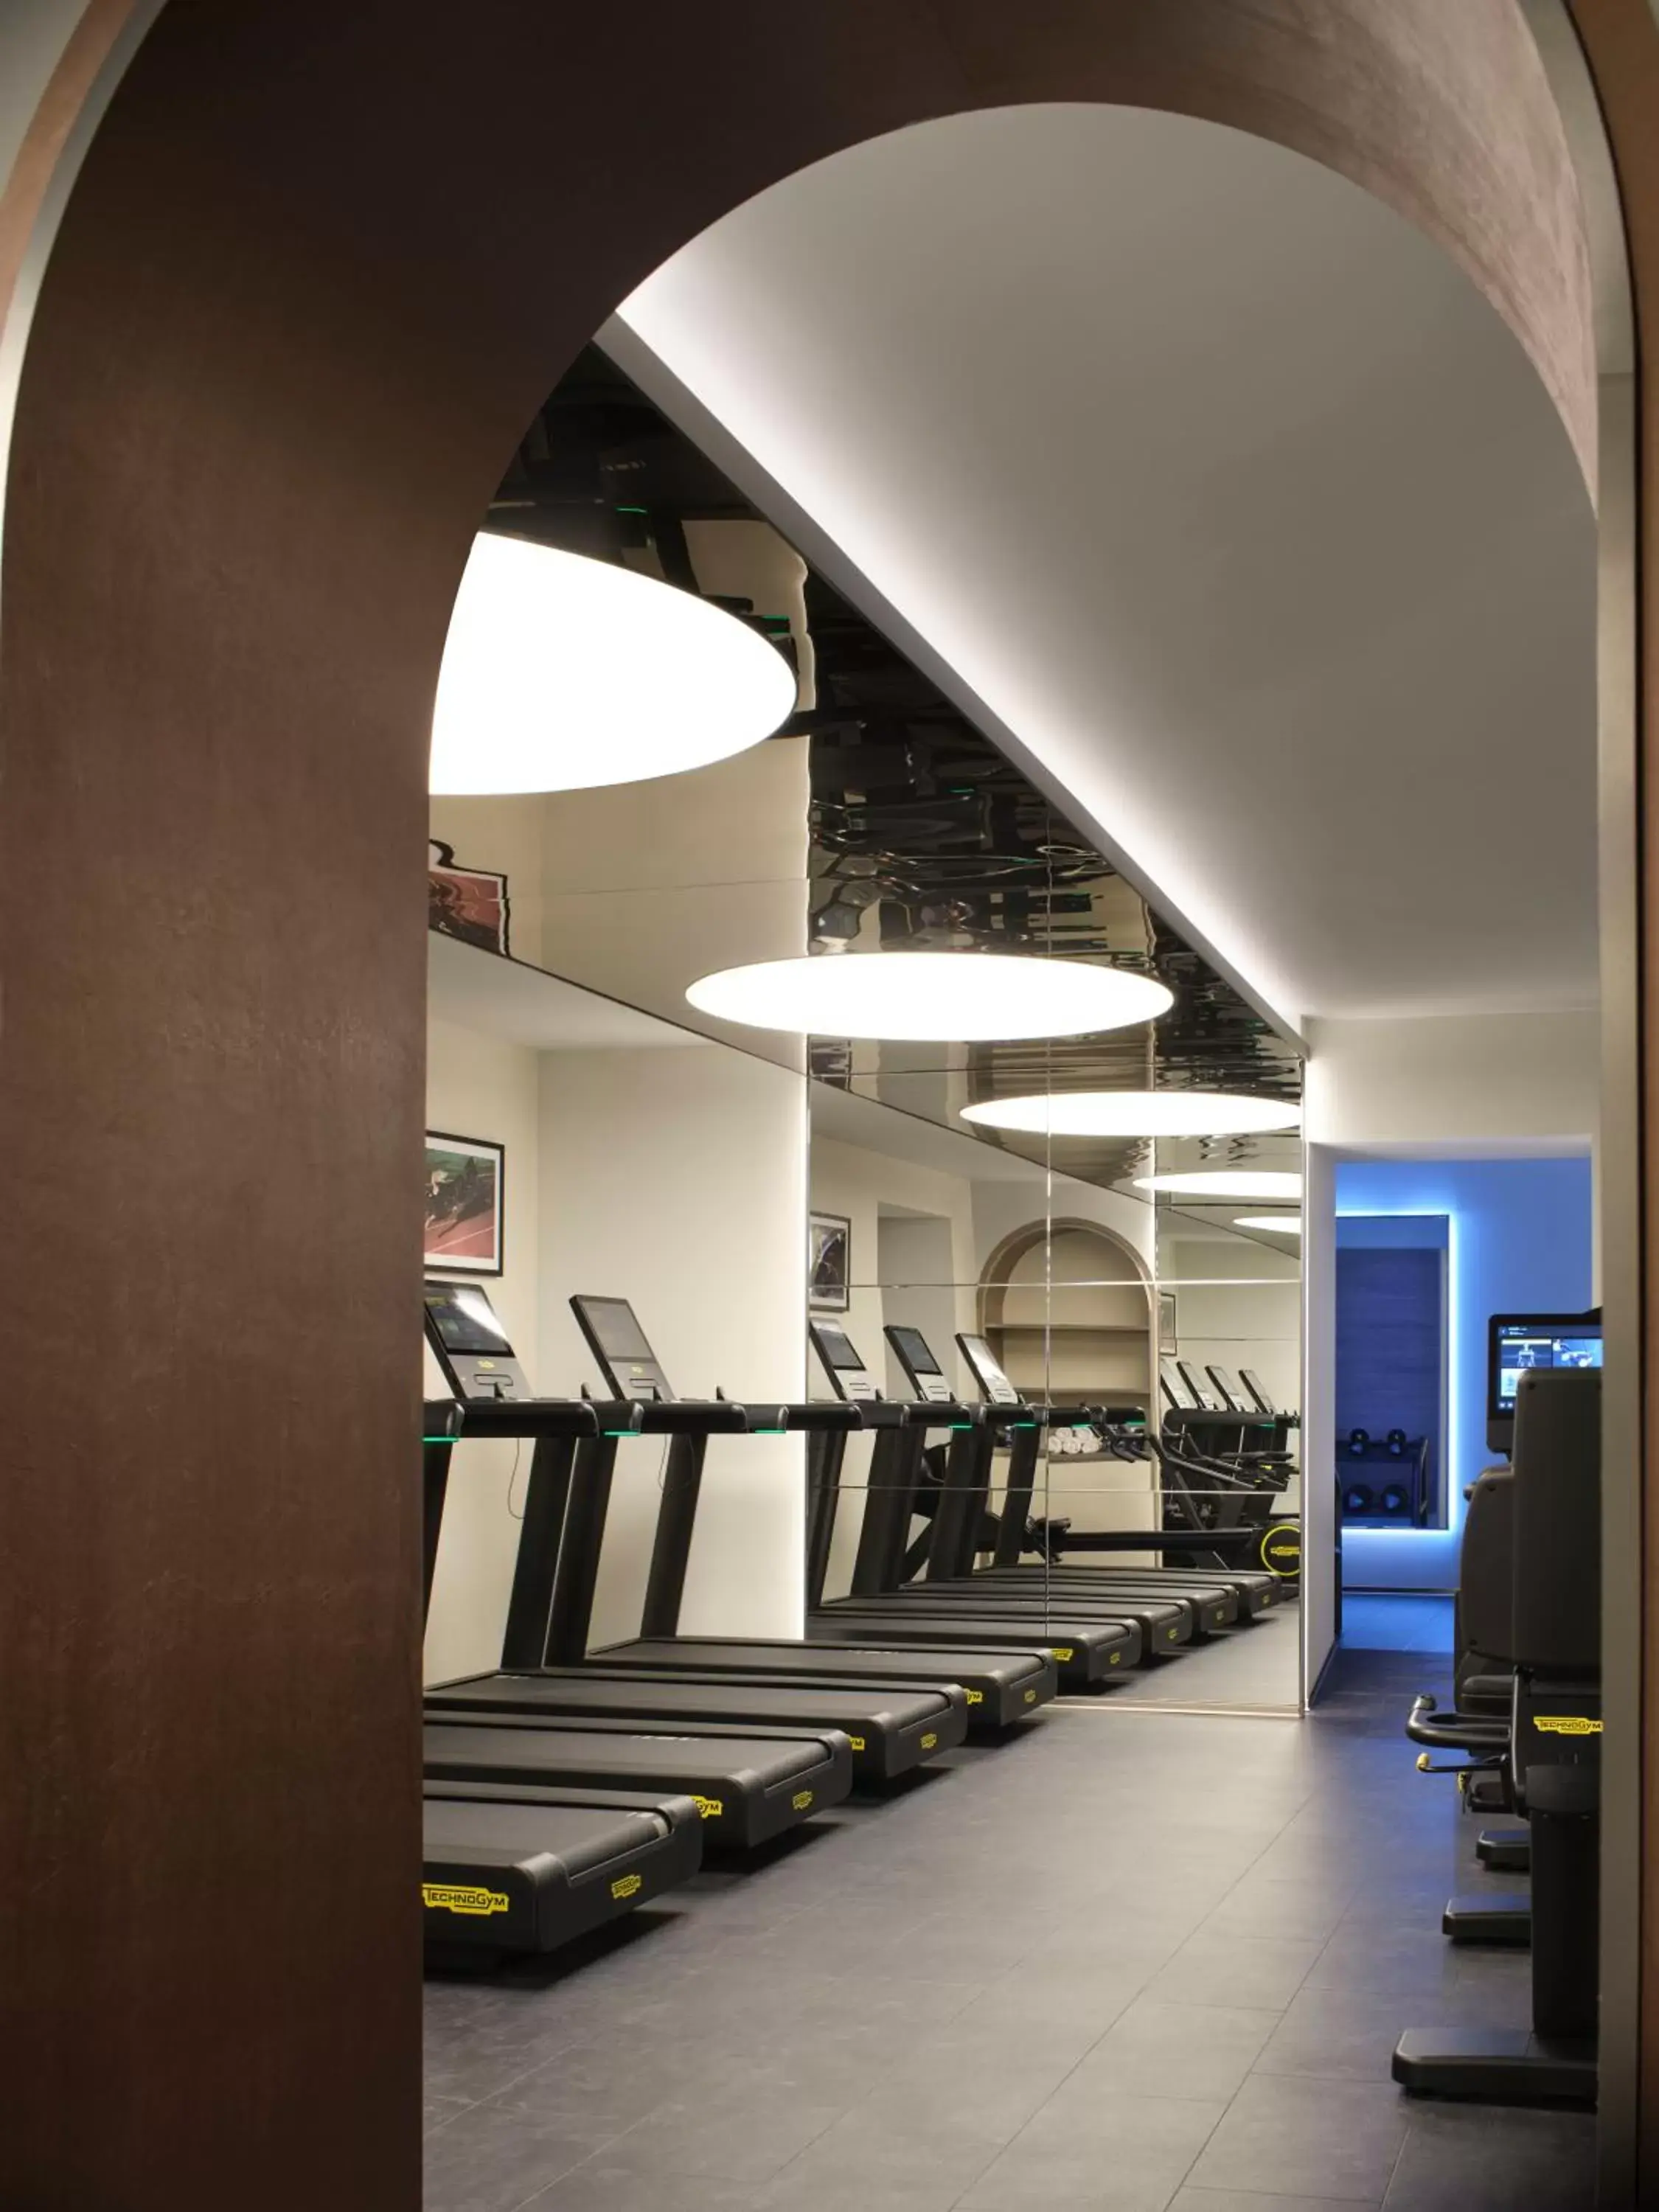 Fitness centre/facilities, Fitness Center/Facilities in Casa Cipriani Milano